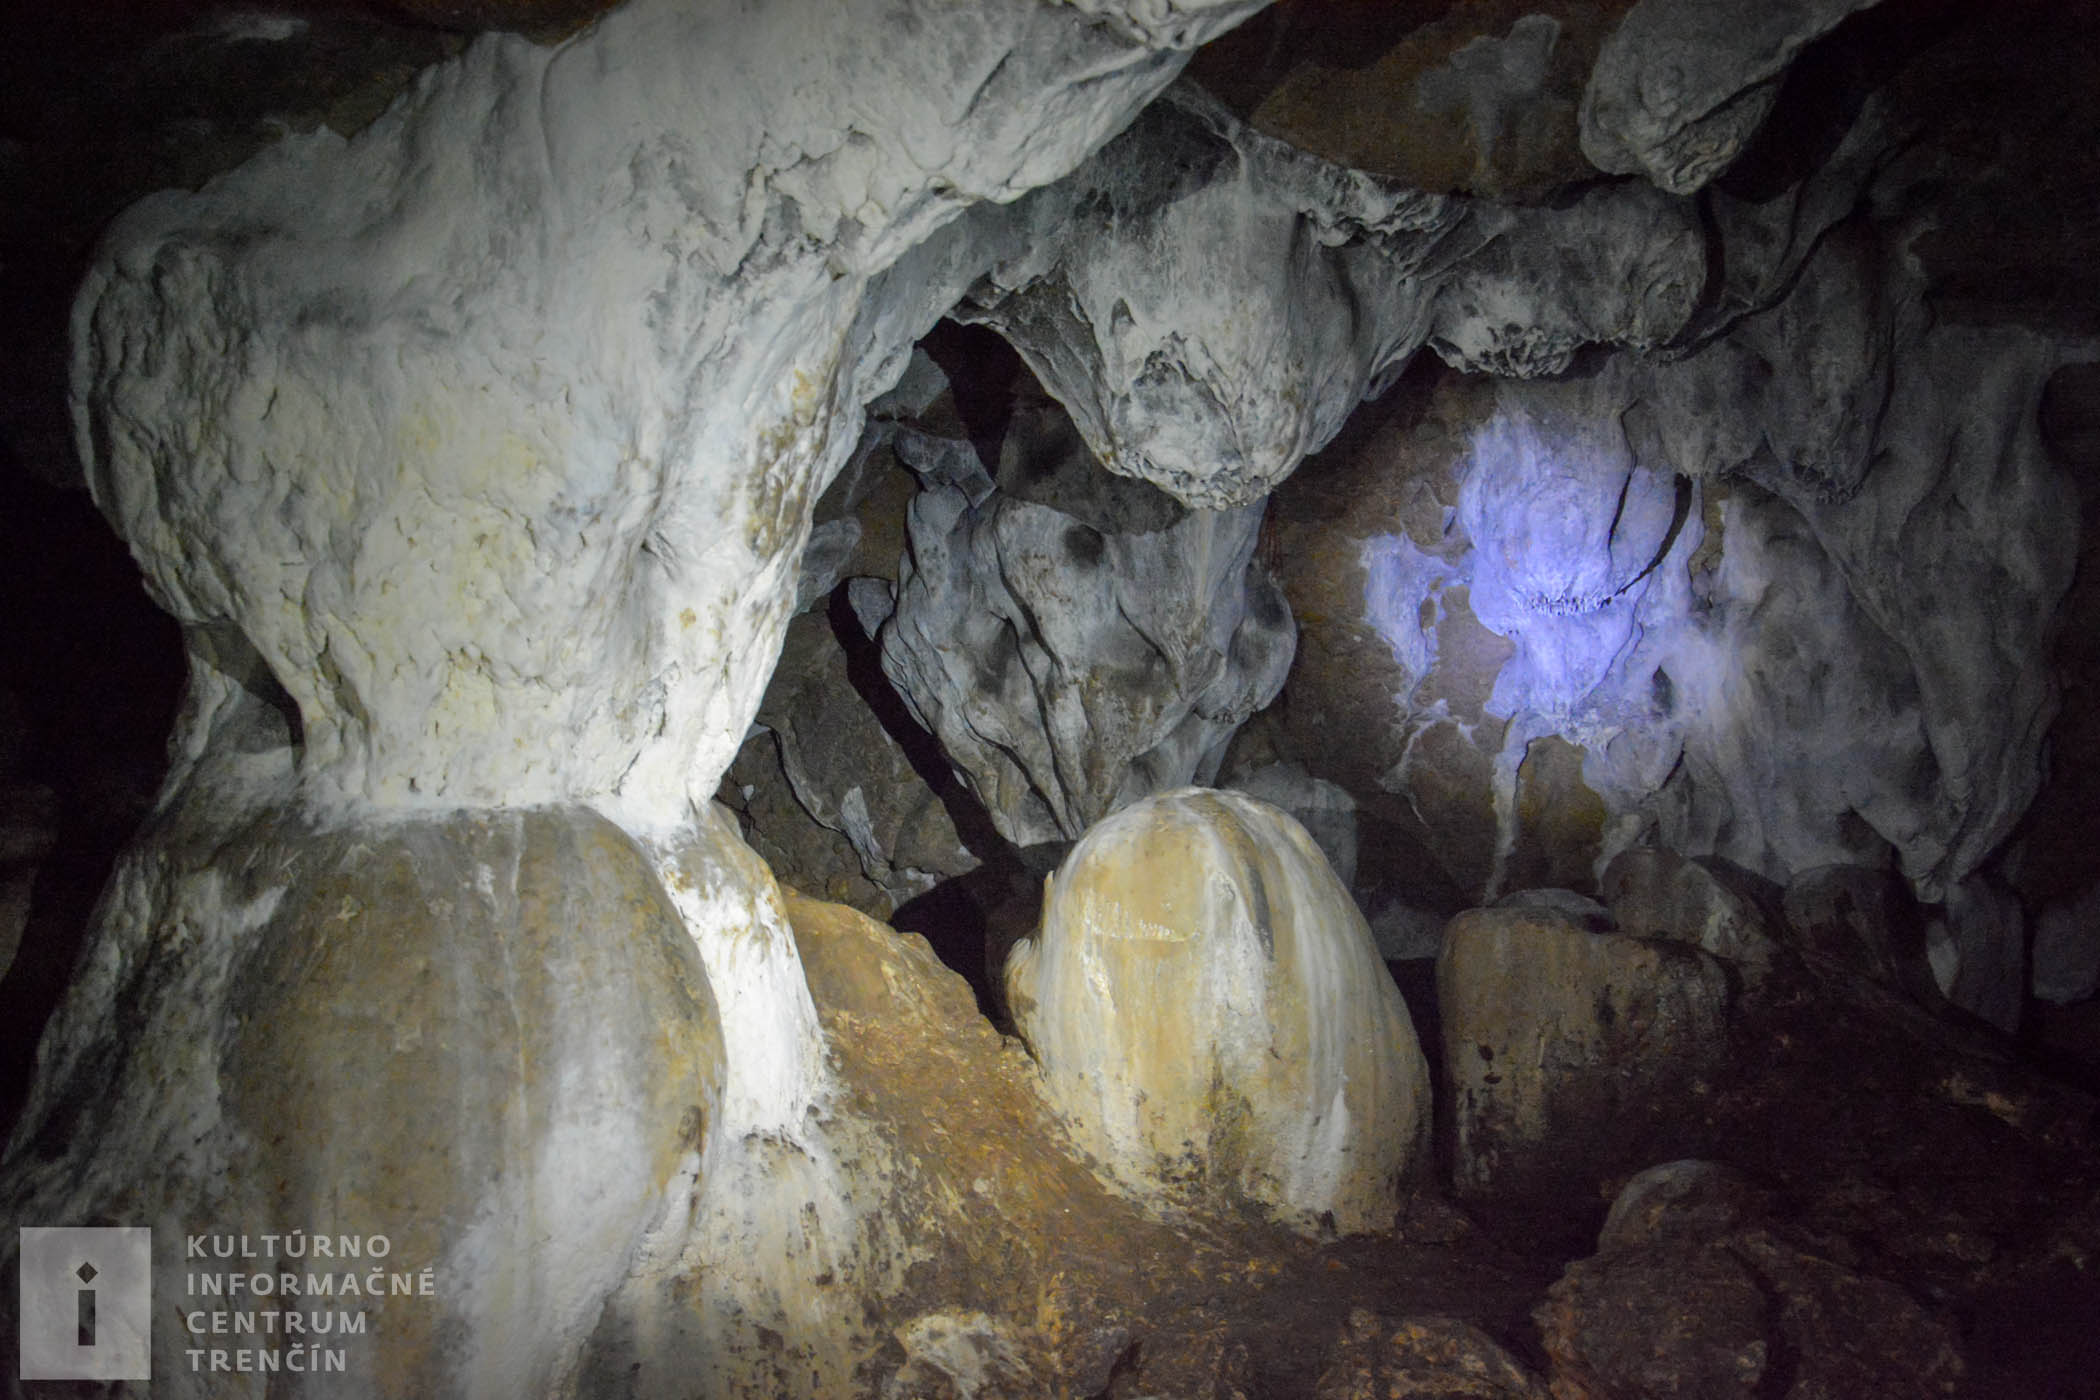 Snehobiela farba sintrového povrchu kontrastuje s tmavým dnom jaskyne, ktoré je na mnohých miestach pokryté vrstvami guána – netopierieho trusu.